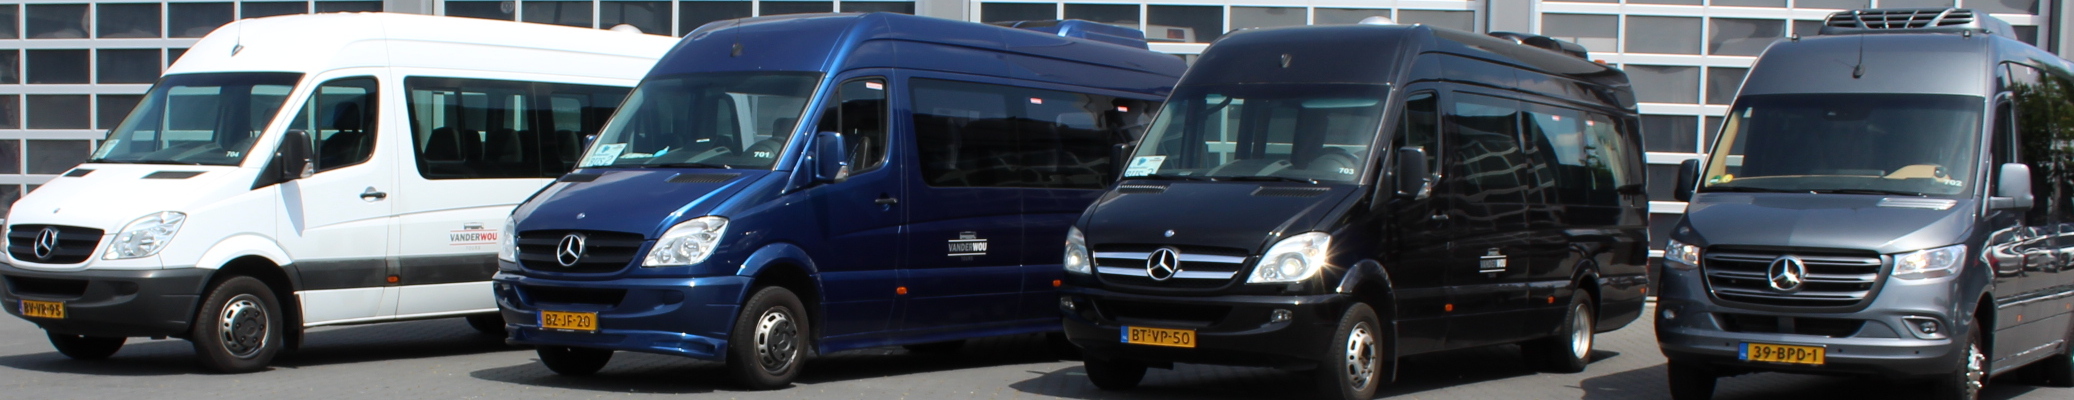 Minibus Midibus Personen Vanderwou Tours